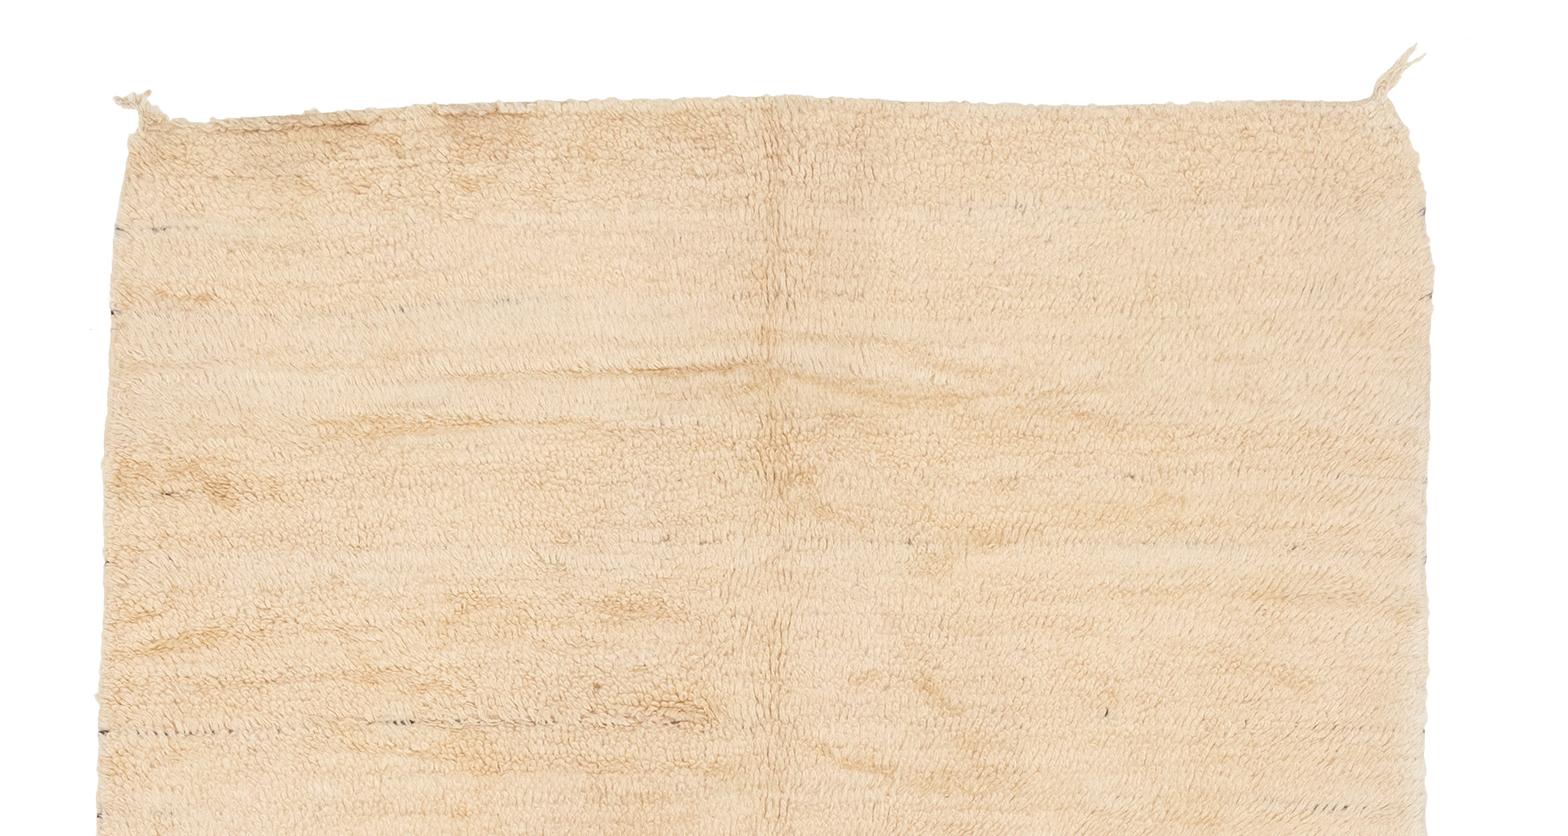 Sehr schöner Beni Ourain-Teppich mit sauberen Schlingen im Gegensatz zu Zotteln. Saubere, geflochtene und geknotete Fransen auf einer Seite.